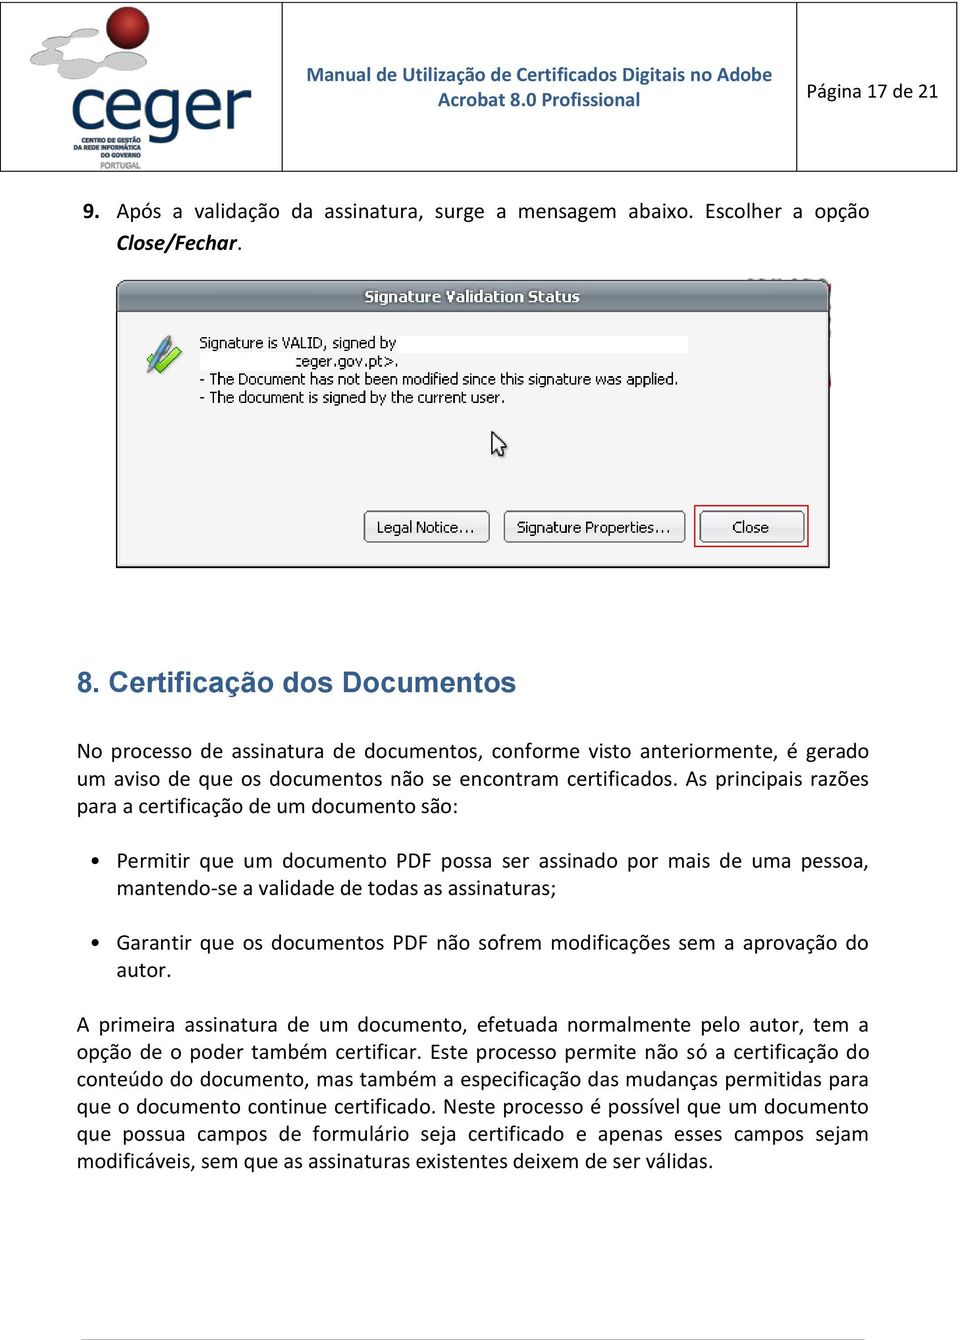 As principais razões para a certificação de um documento são: Permitir que um documento PDF possa ser assinado por mais de uma pessoa, mantendo-se a validade de todas as assinaturas; Garantir que os